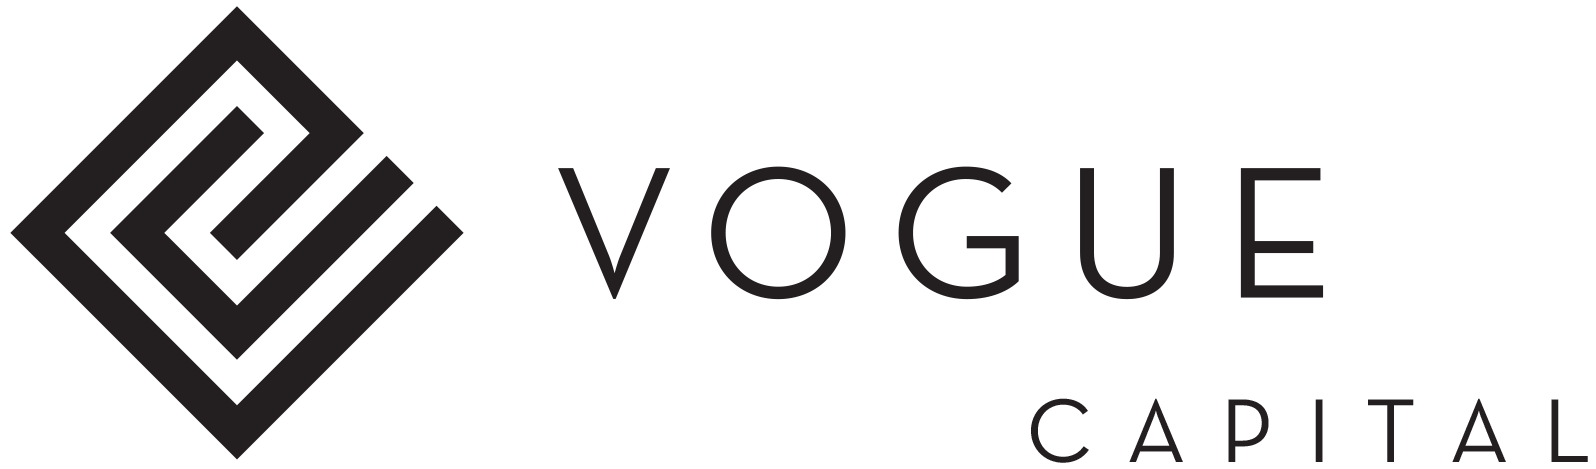 Vogue Homes - logo